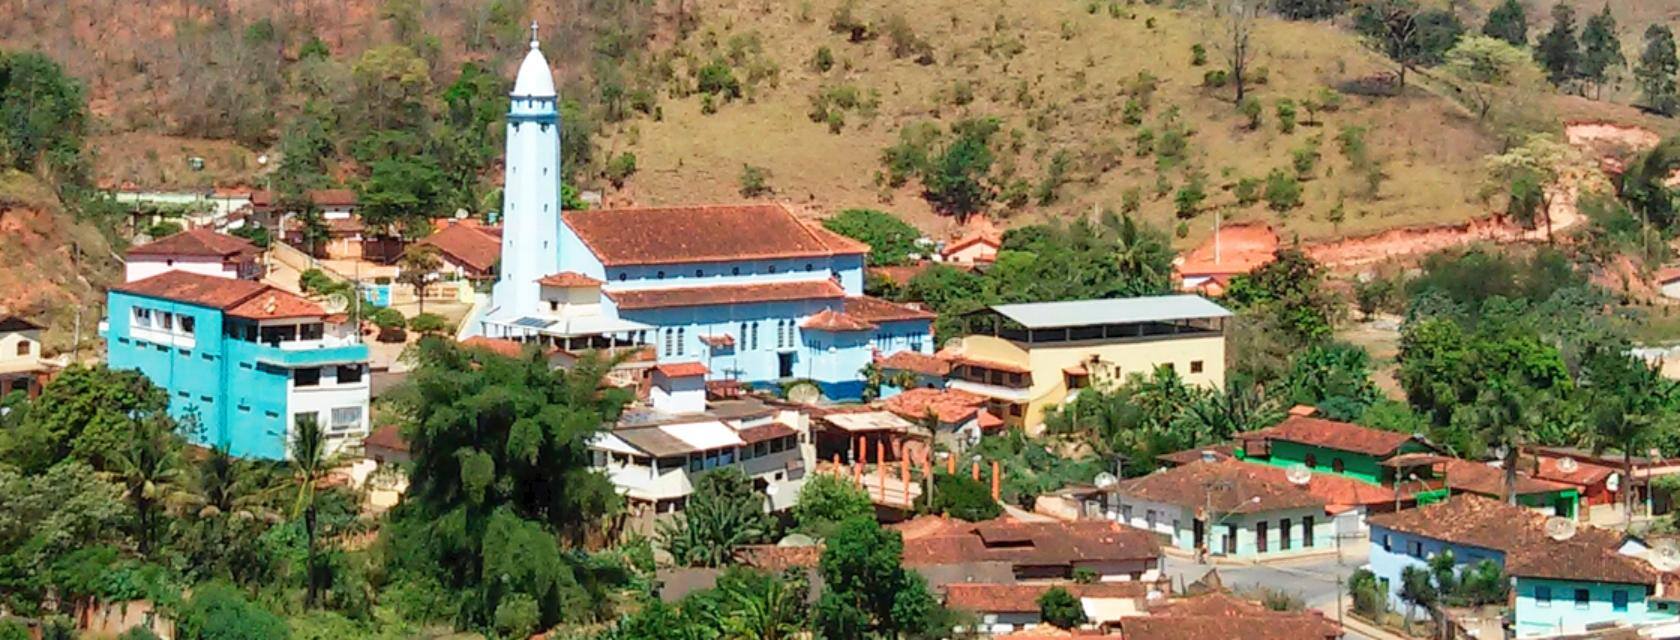 Com menos de 15 mil habitantes desde 2012, município de Água Boa não poderia ter mais de nove vereadores